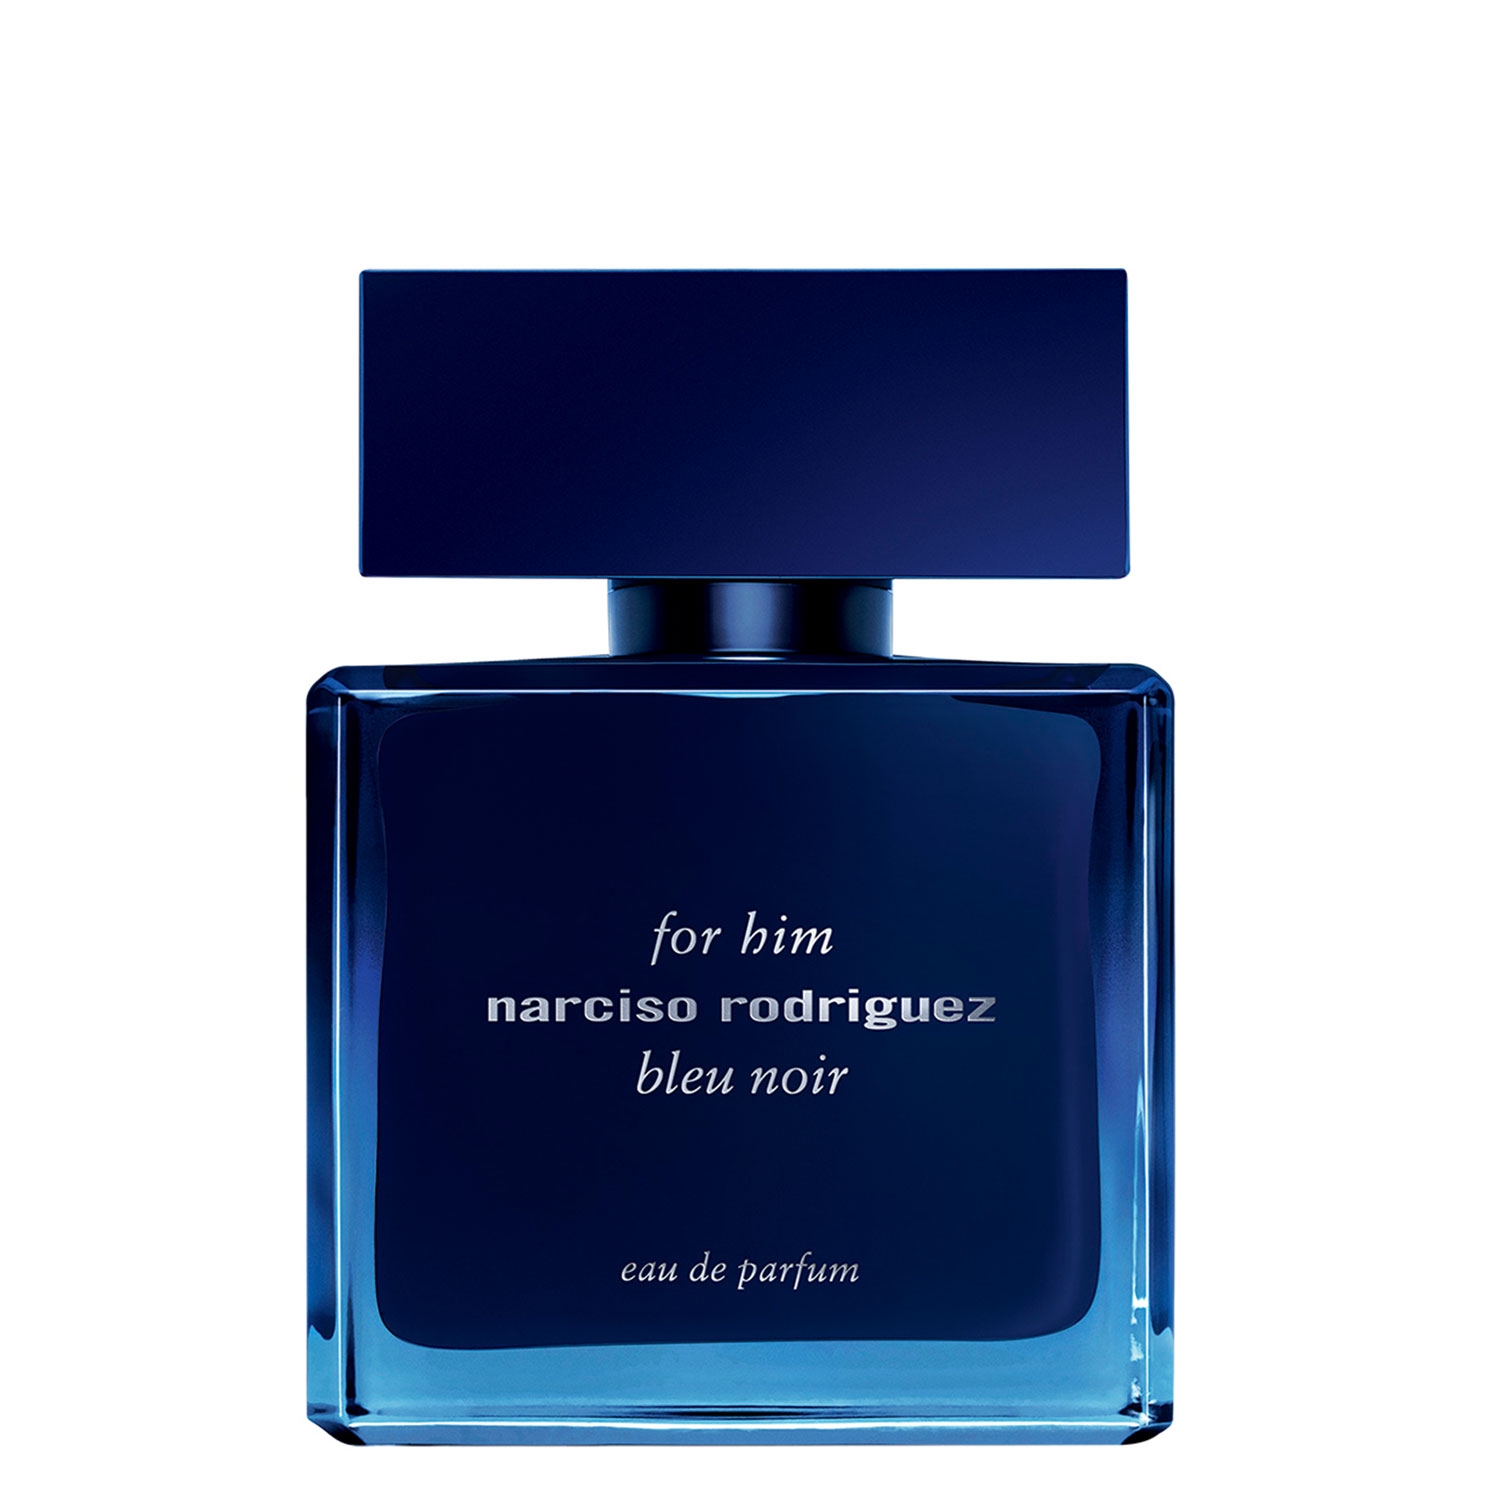 Produktbild von Narciso - For Him Bleu Noir Eau de Parfum